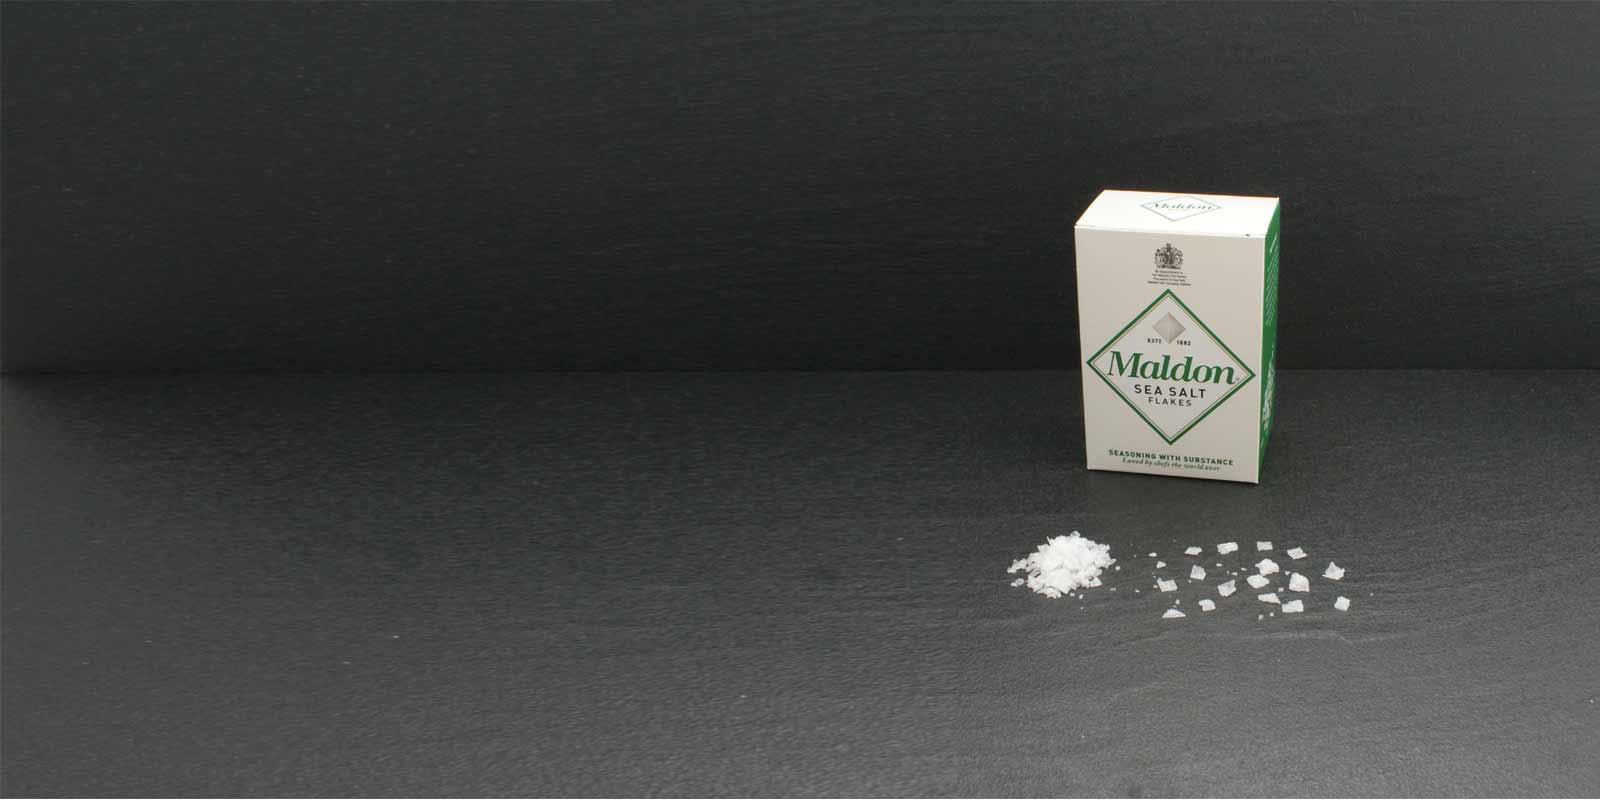 Kristali kosmicev morske soli Maldon Znacilni kristali soli v obliki piramide so izredno tanki in jih zlahka podrgnete med prsti za zacimbo. Dragoceno sol pridobiva podjetje Maldon Sea Salt Company, edino rudarsko podjetje v Angliji. Majhno druzinsko podjetje predeluje in prodaja sol od leta 1882. Morska sol Maldon je na voljo le v omejenih kolicinah.